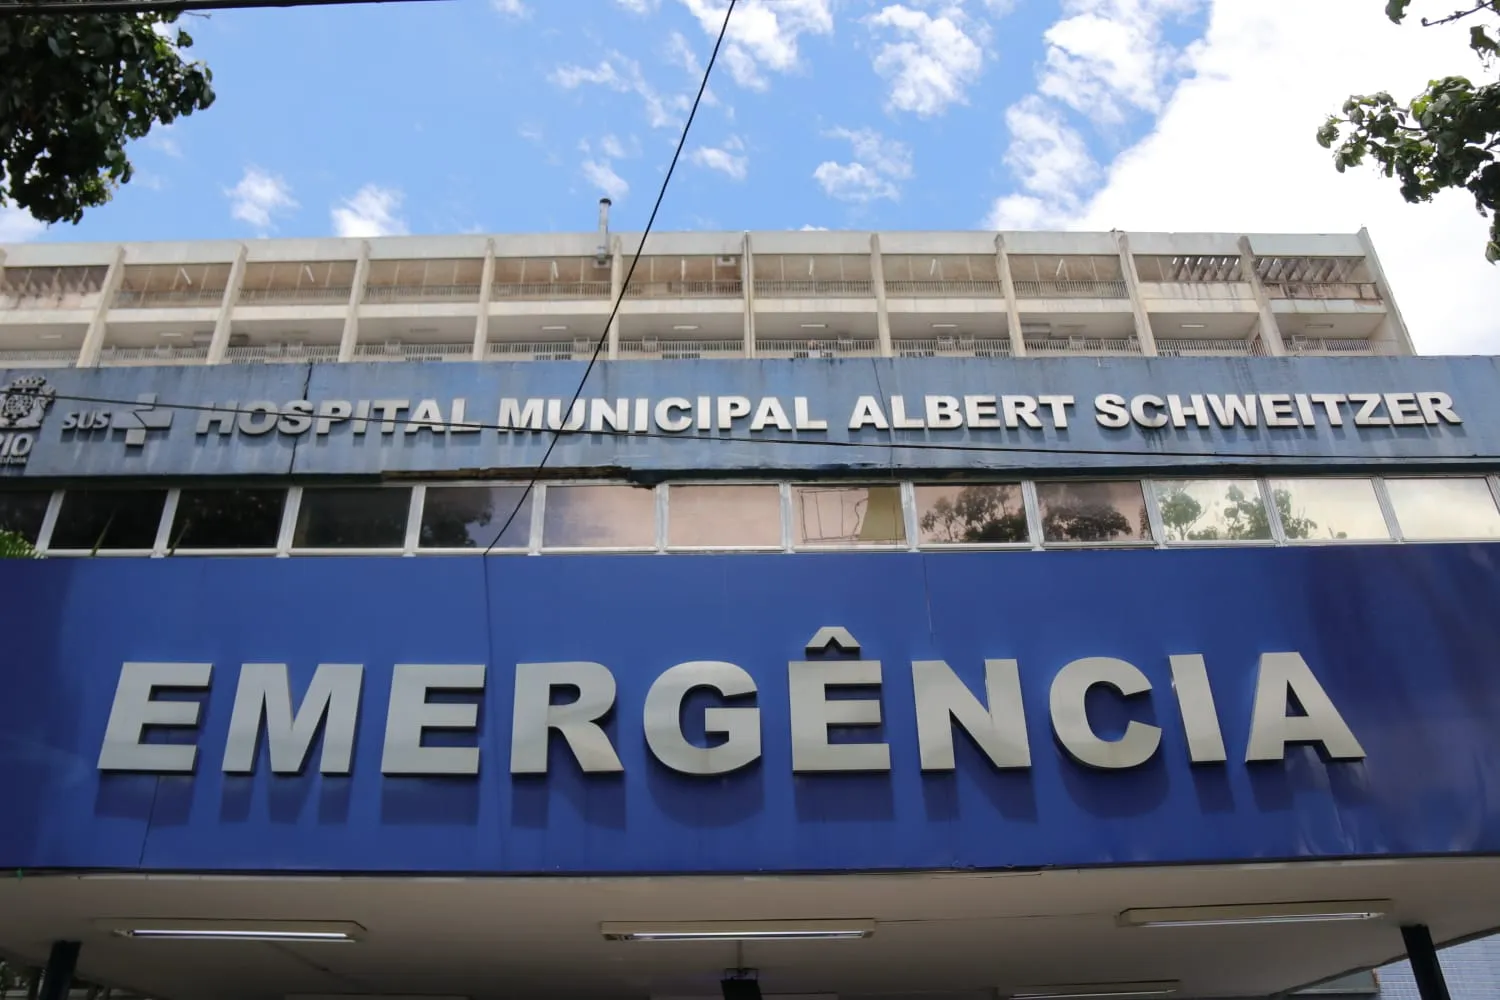 Suspeitos foram socorridos para o Hospital Municipal Albert Schweitzer